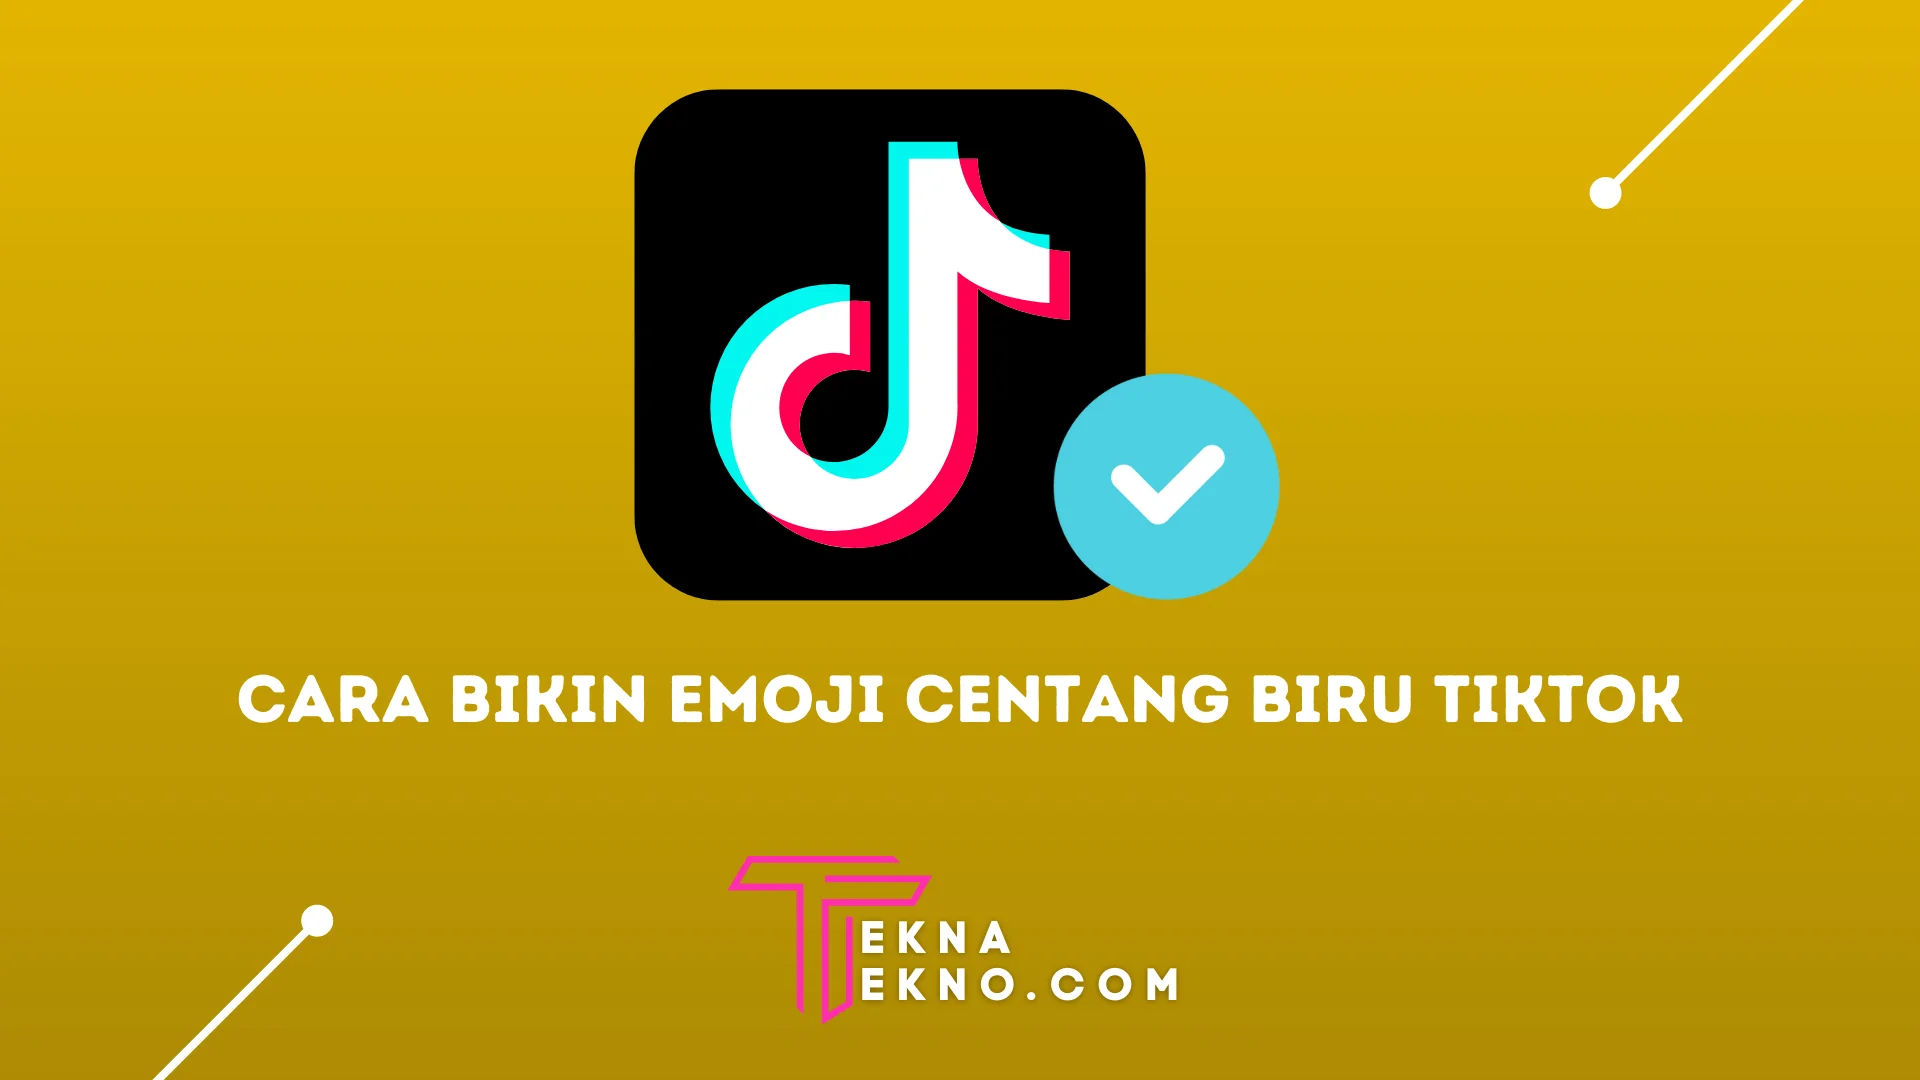 Font Emoji Centang Biru Tiktok, Begini 4 Cara Bikin dan Download Nya Simple Banget